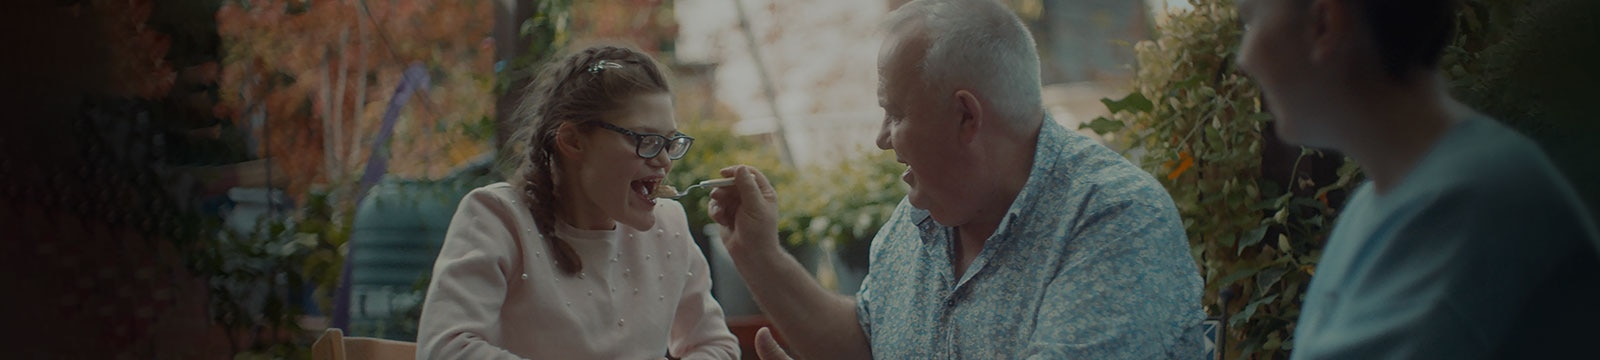 Seduto all’esterno, un uomo sorridente dà da mangiare alla figlia adolescente. 